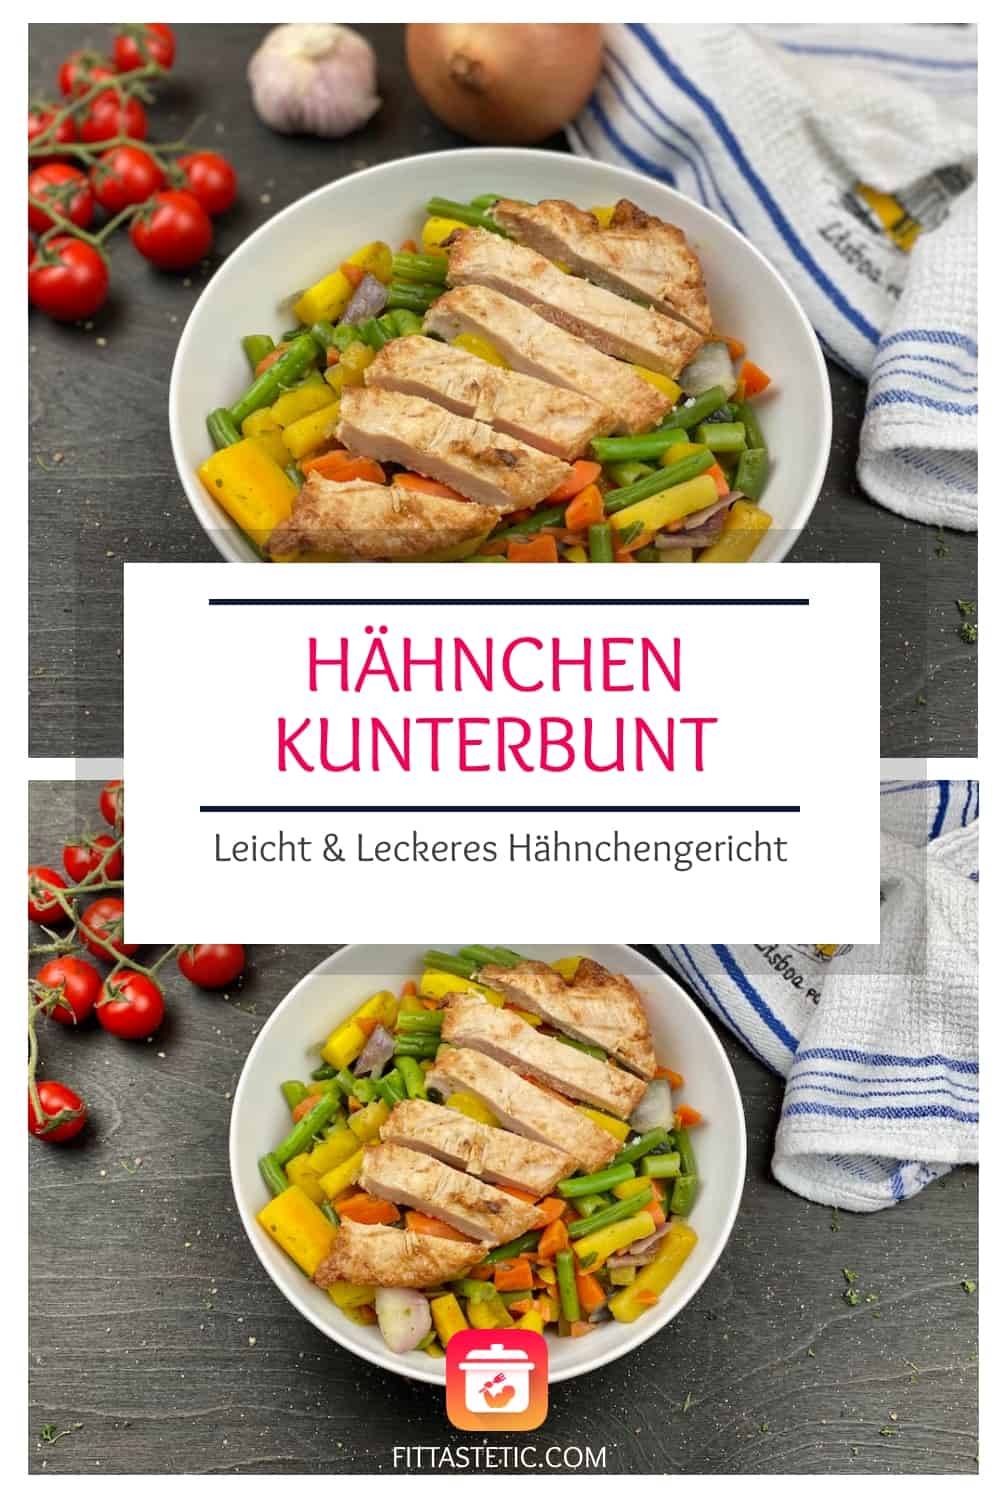 Leicht & Leckeres Hähnchengericht: Hähnchen Kunterbunt